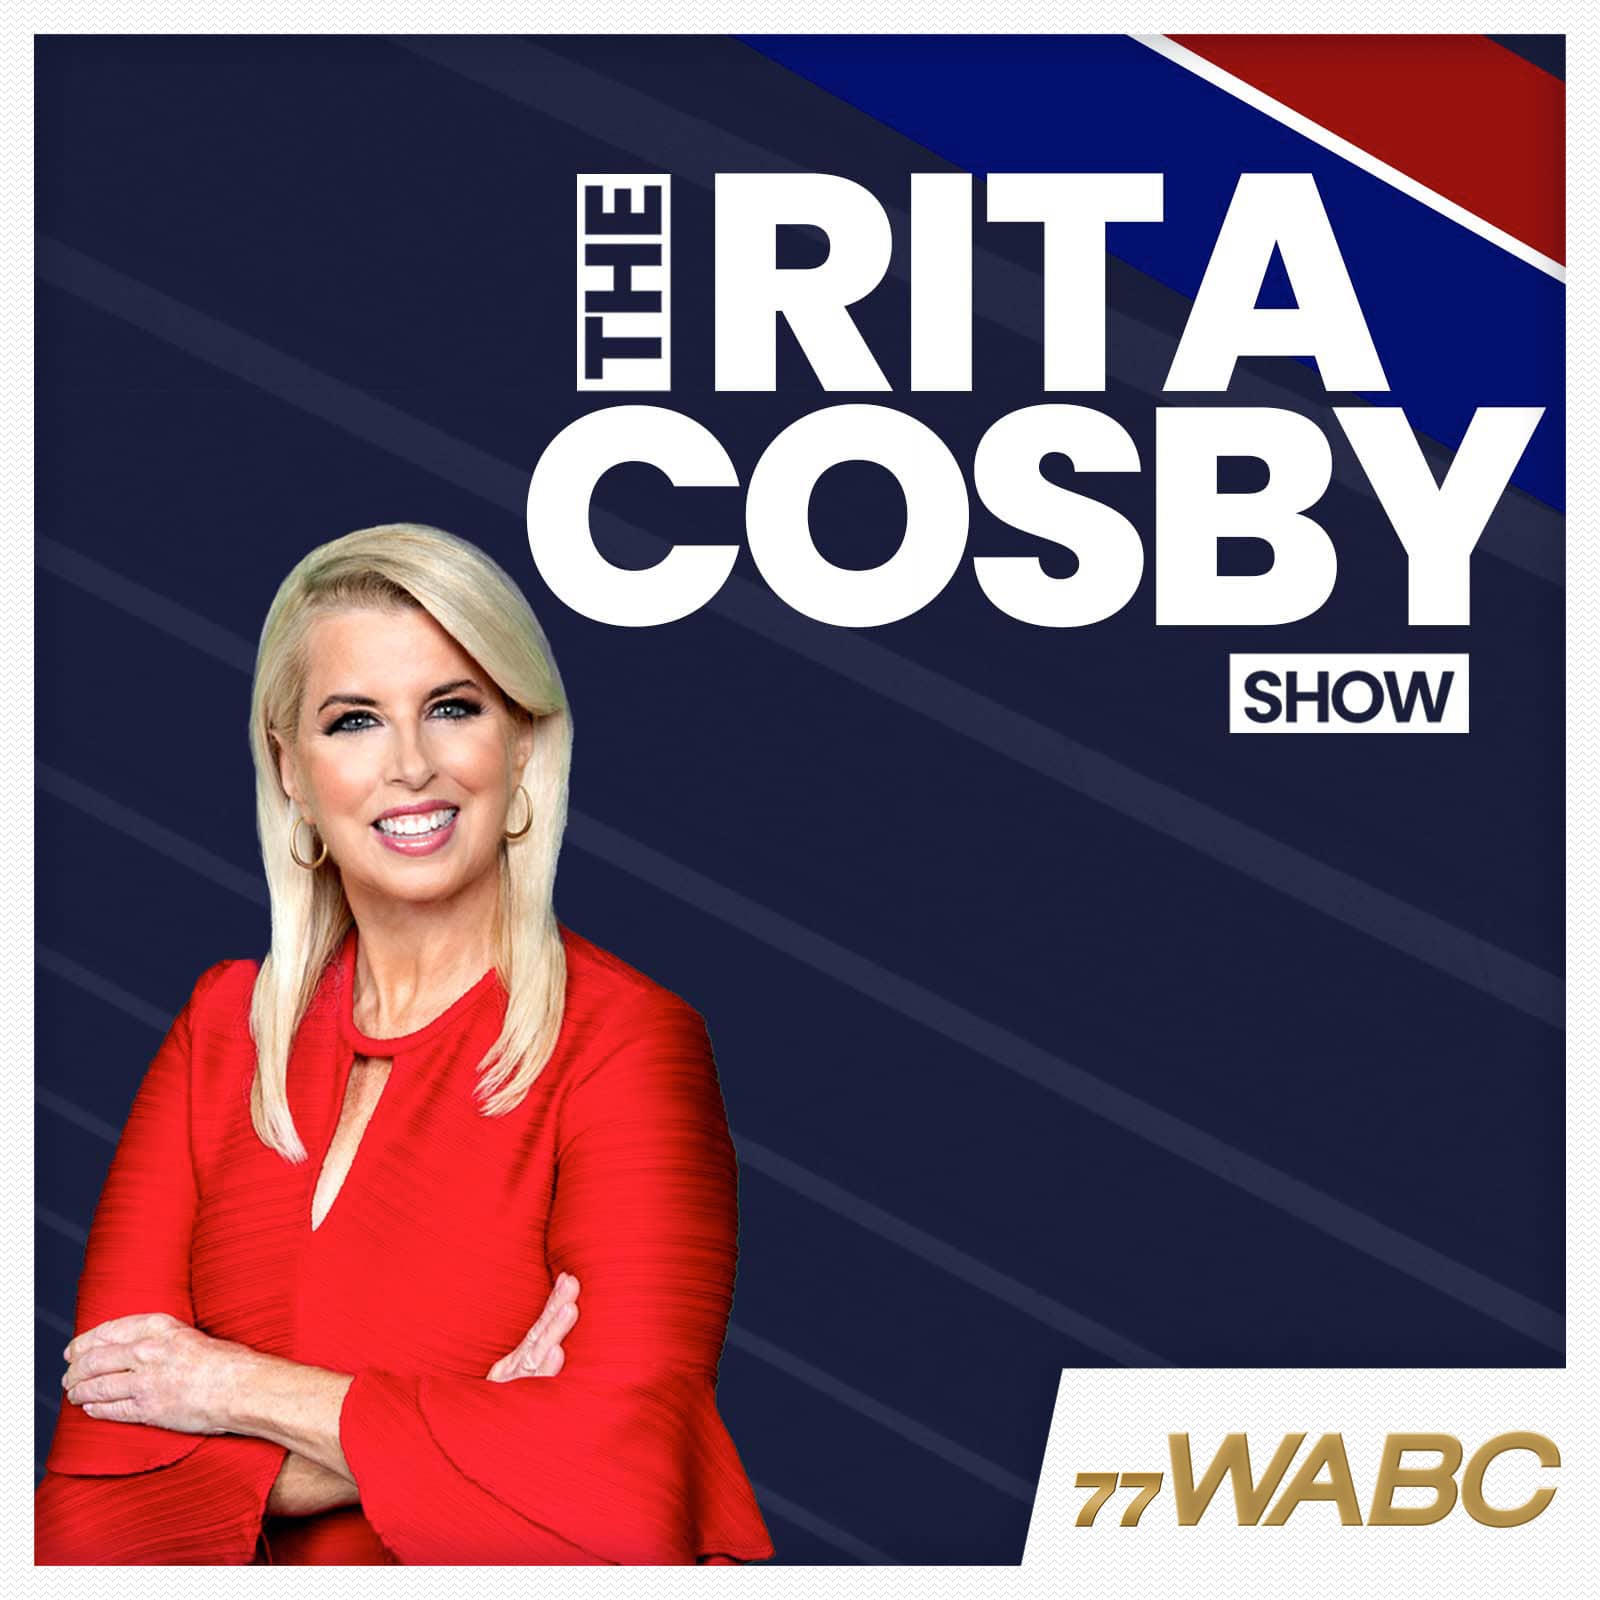 rita-cosby-podcast-new-logo-254